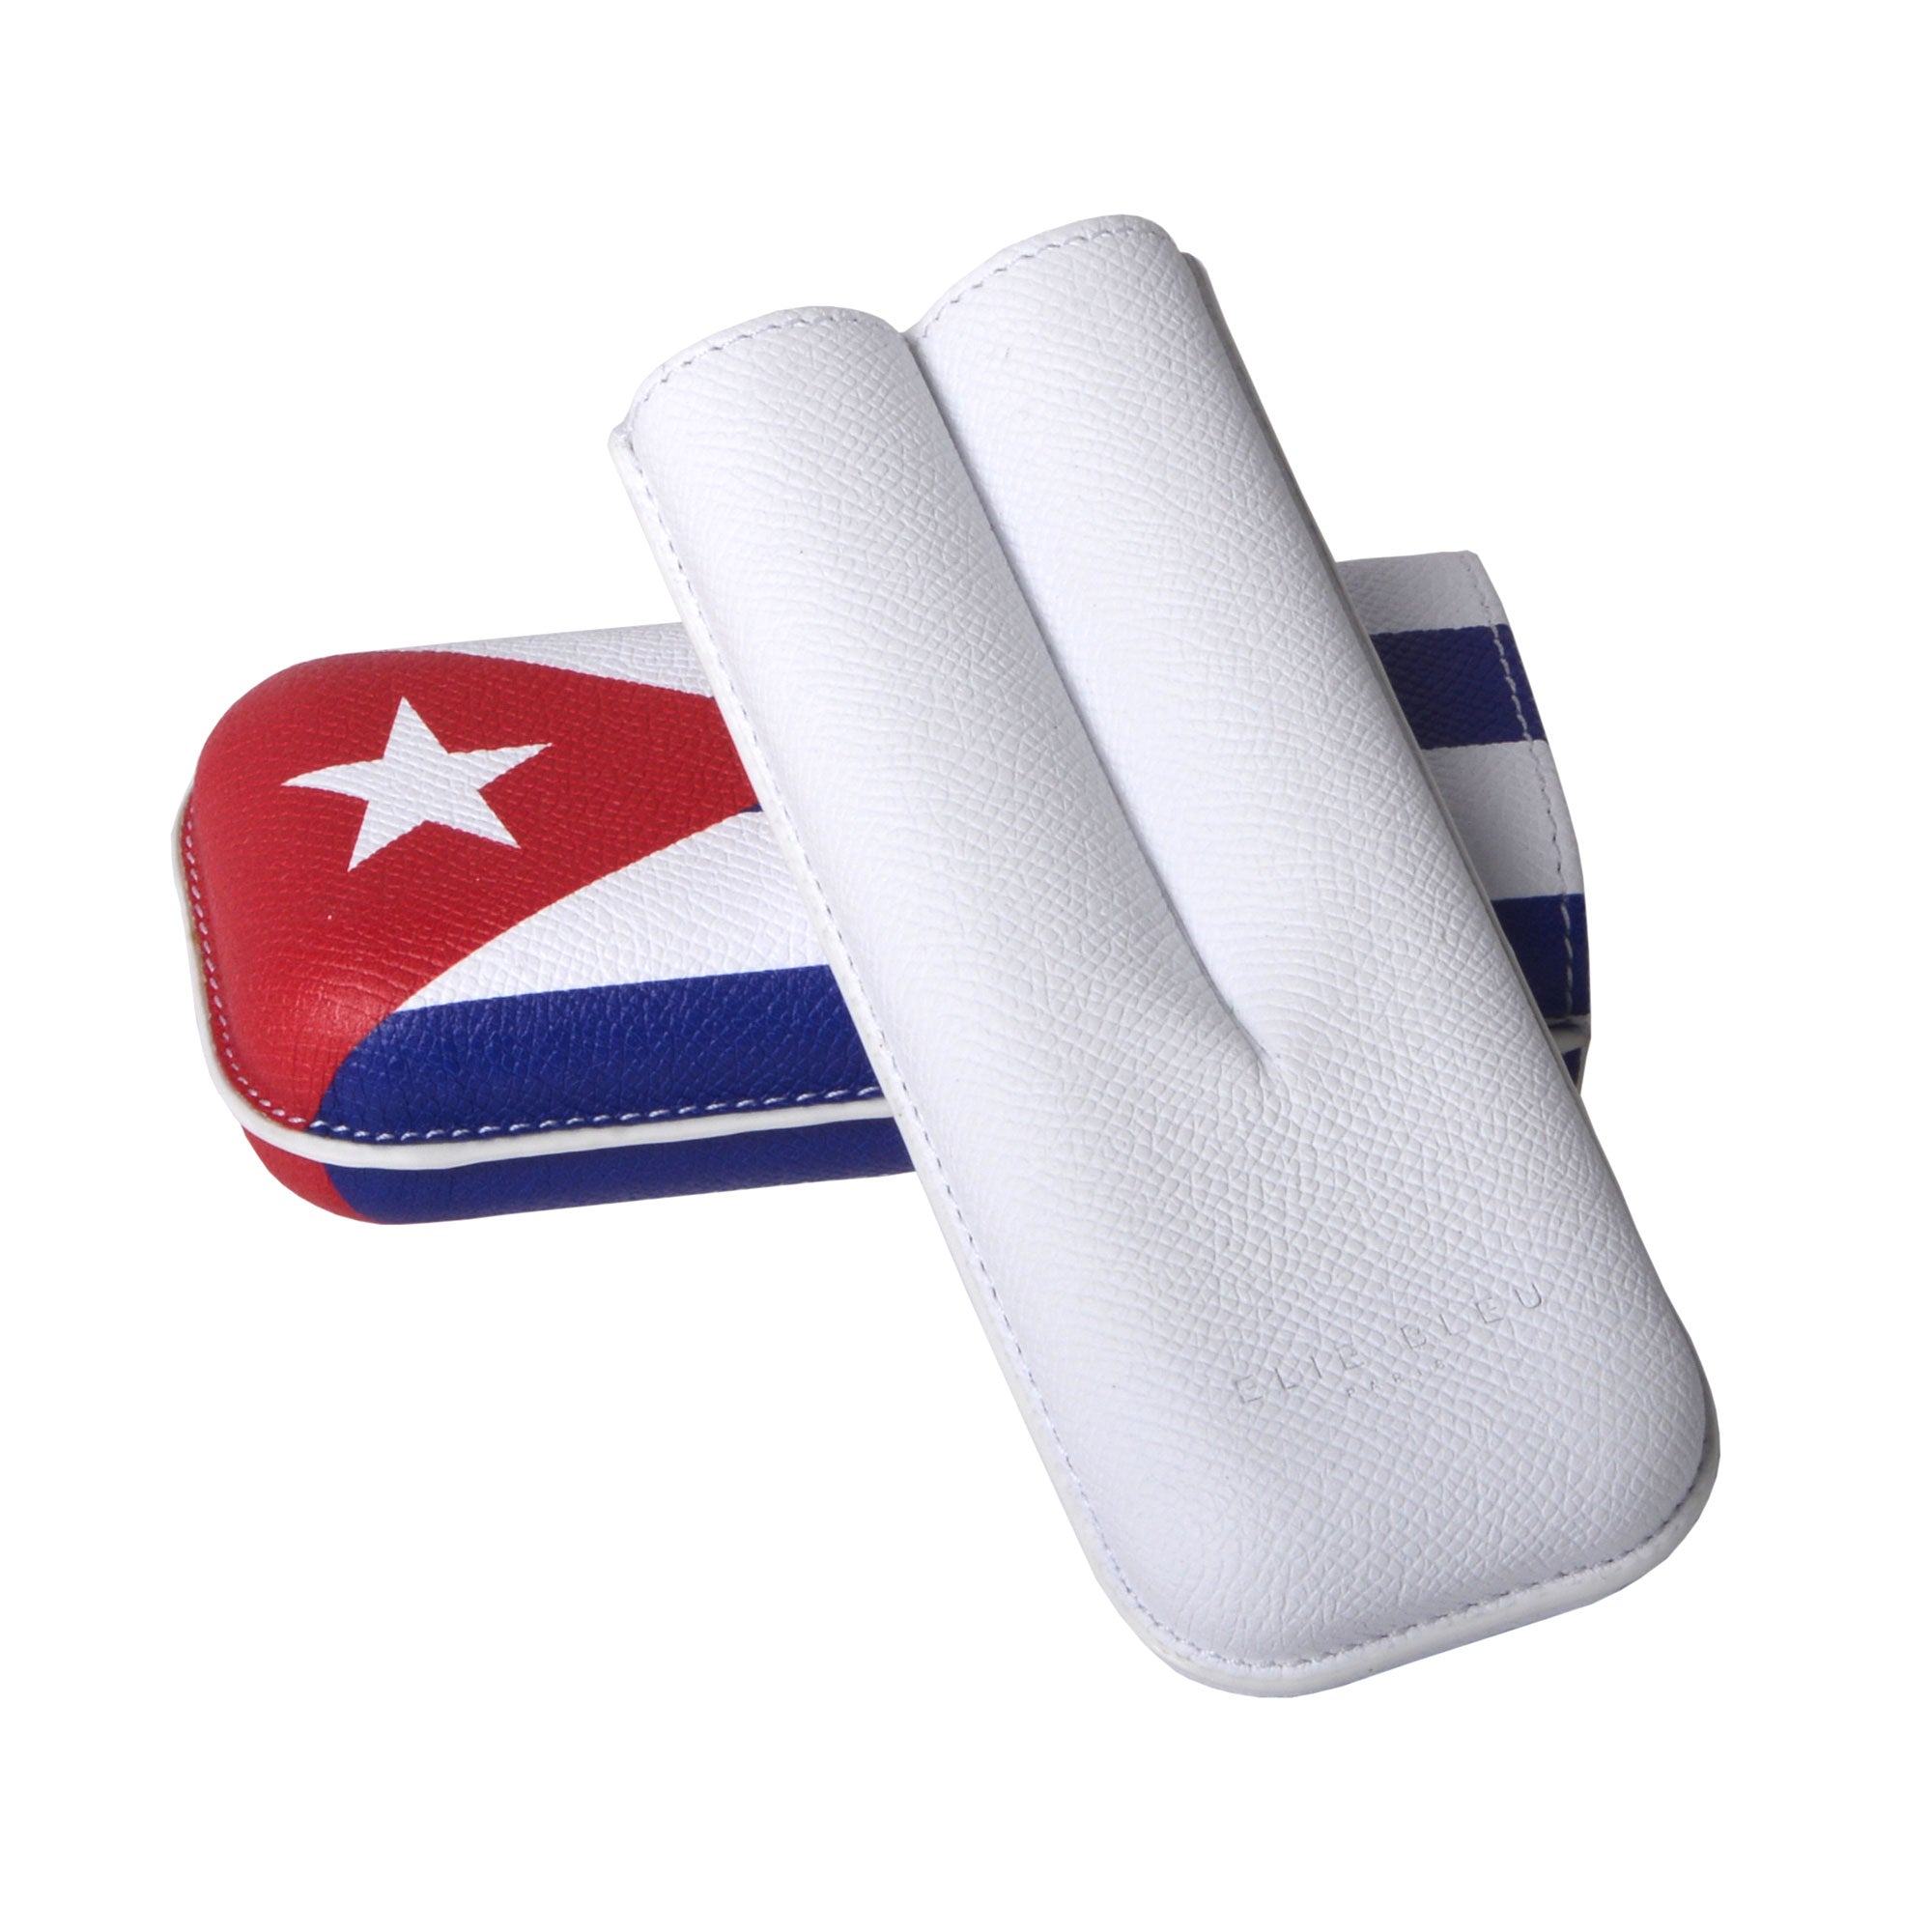 Cigar case Cuban flag - 2 Cigars calibre 27